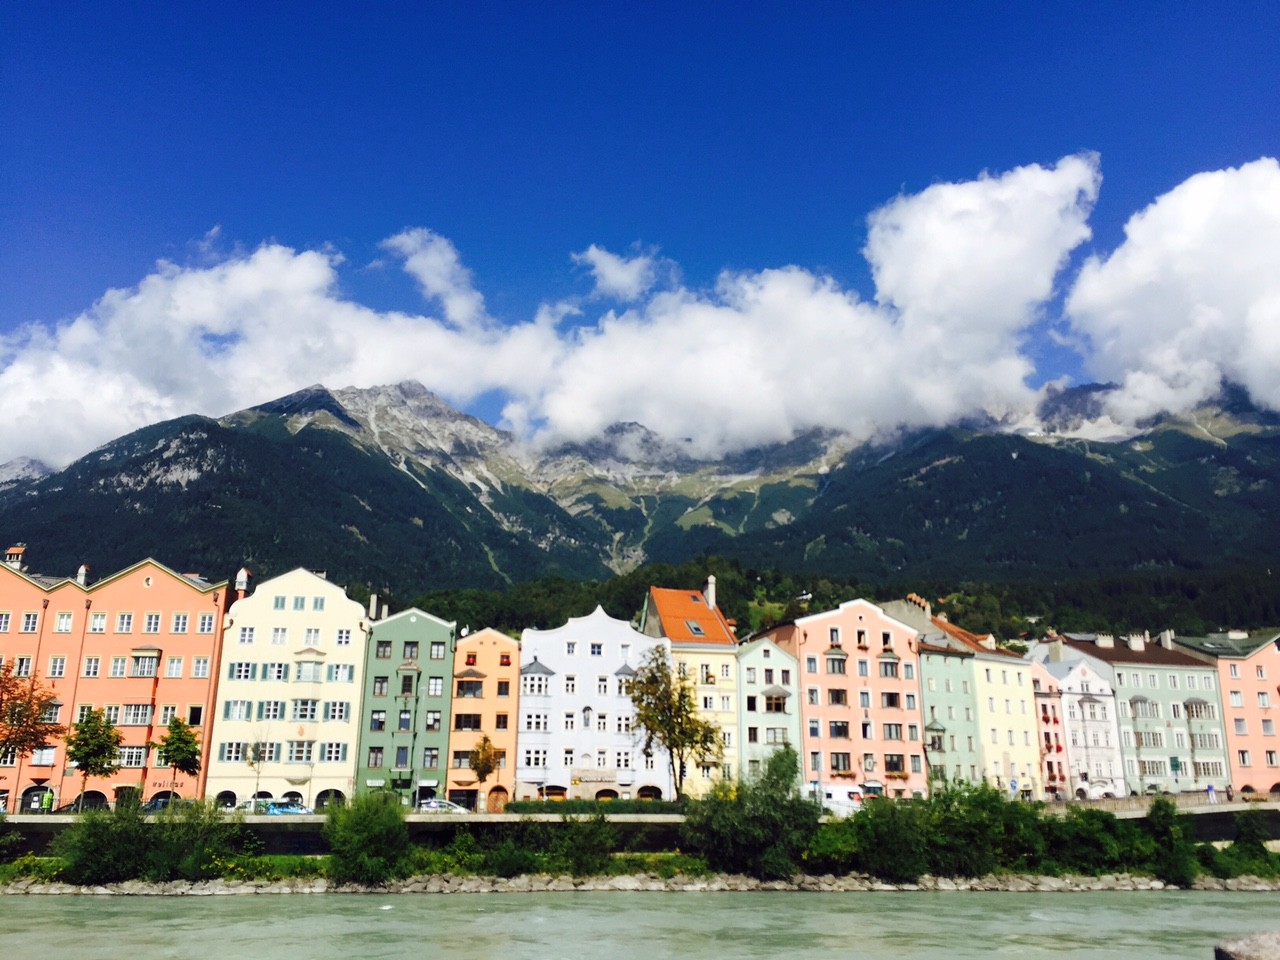 Prachtig Innsbruck vijf tips in Innsbruck tijdens een tussenstop en kort verblijf foodblog Foodinista reist